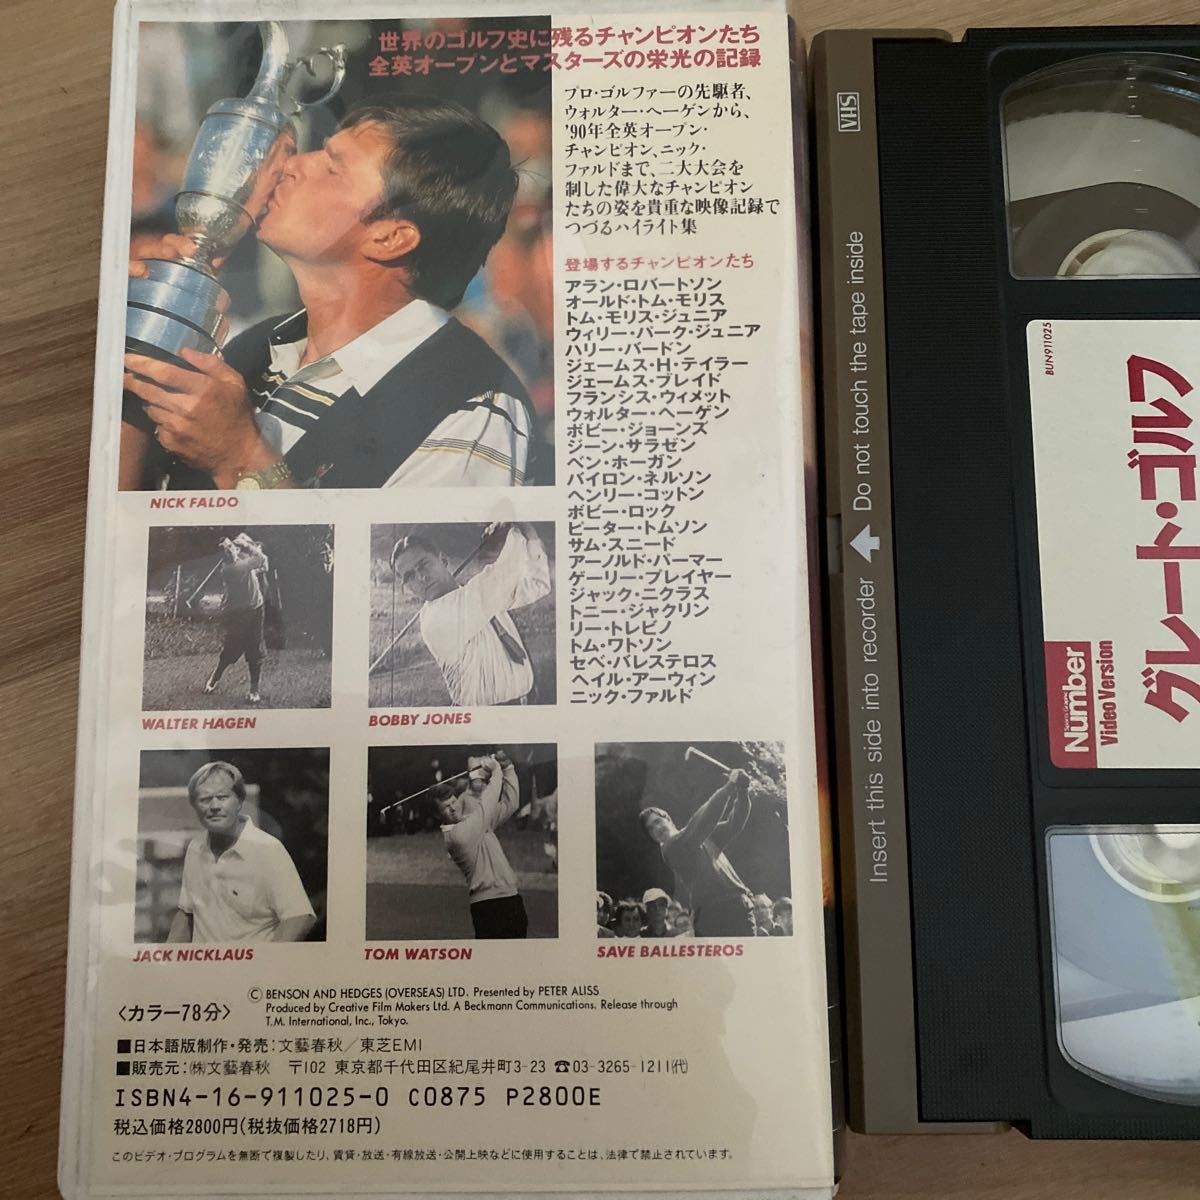 超レア！貴重！グレートゴルフ栄光のチャンピオンv VHS ビデオテープ